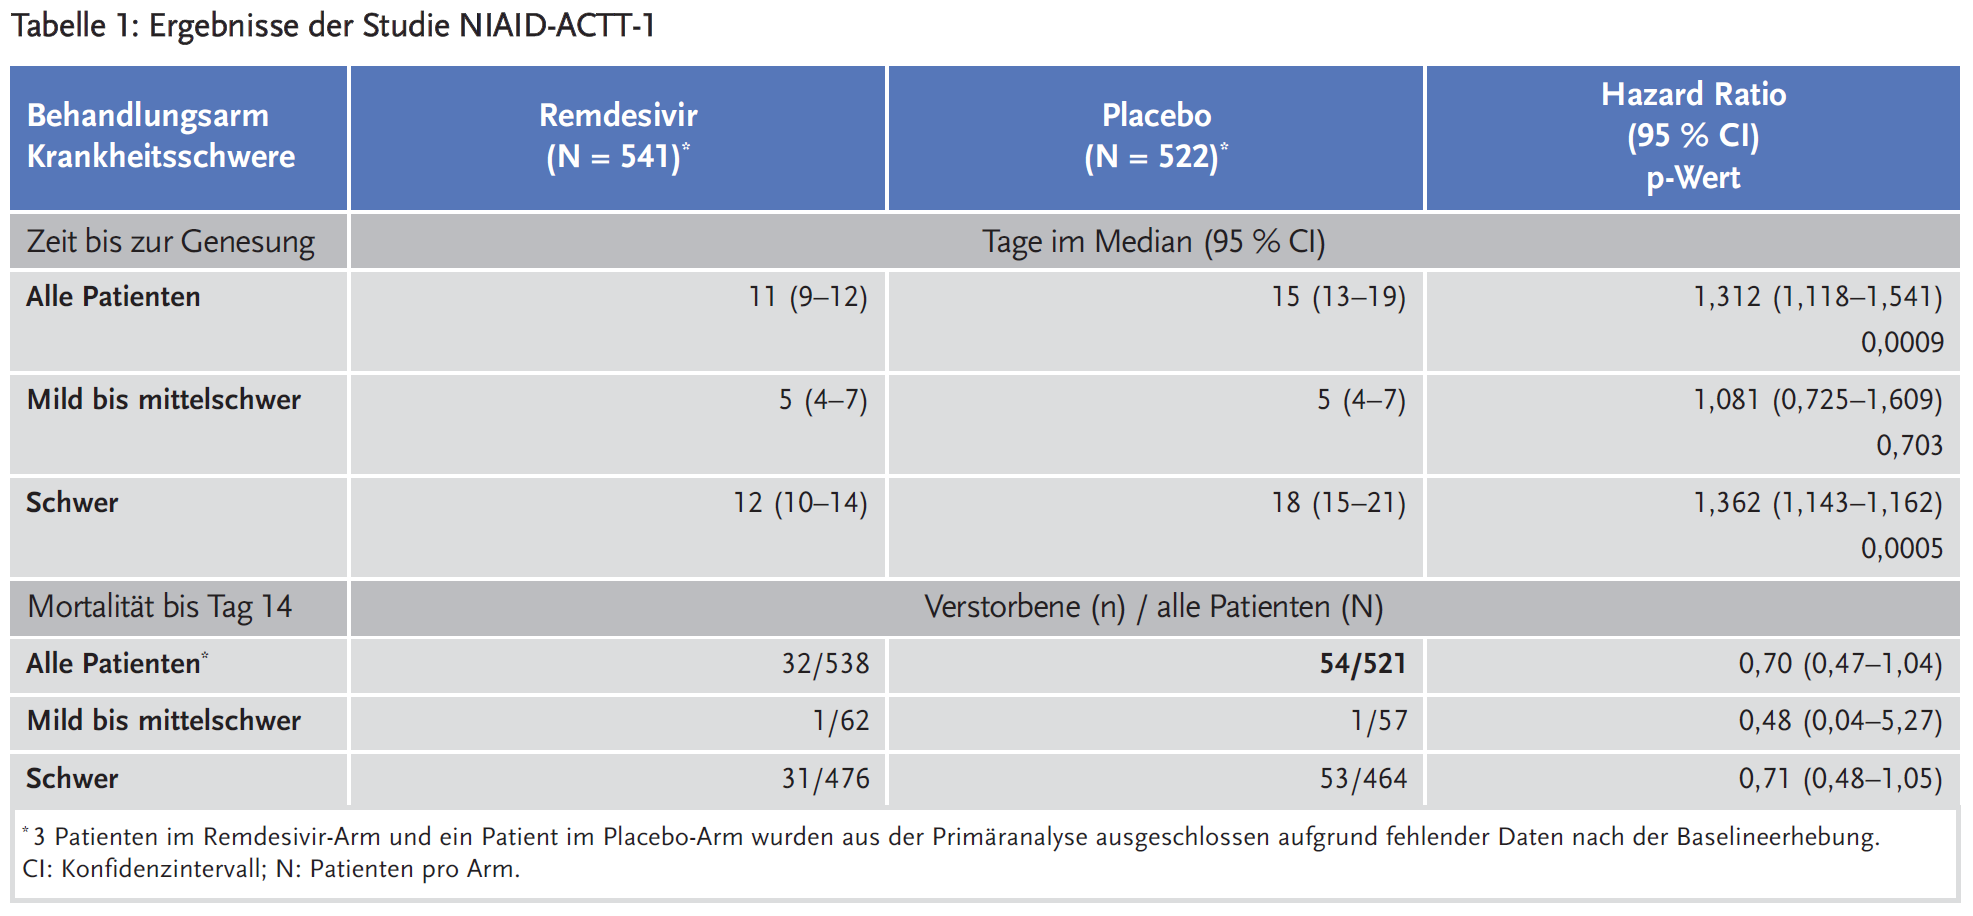 Tabelle 1: Ergebnisse der Studie NIAID-ACTT-1